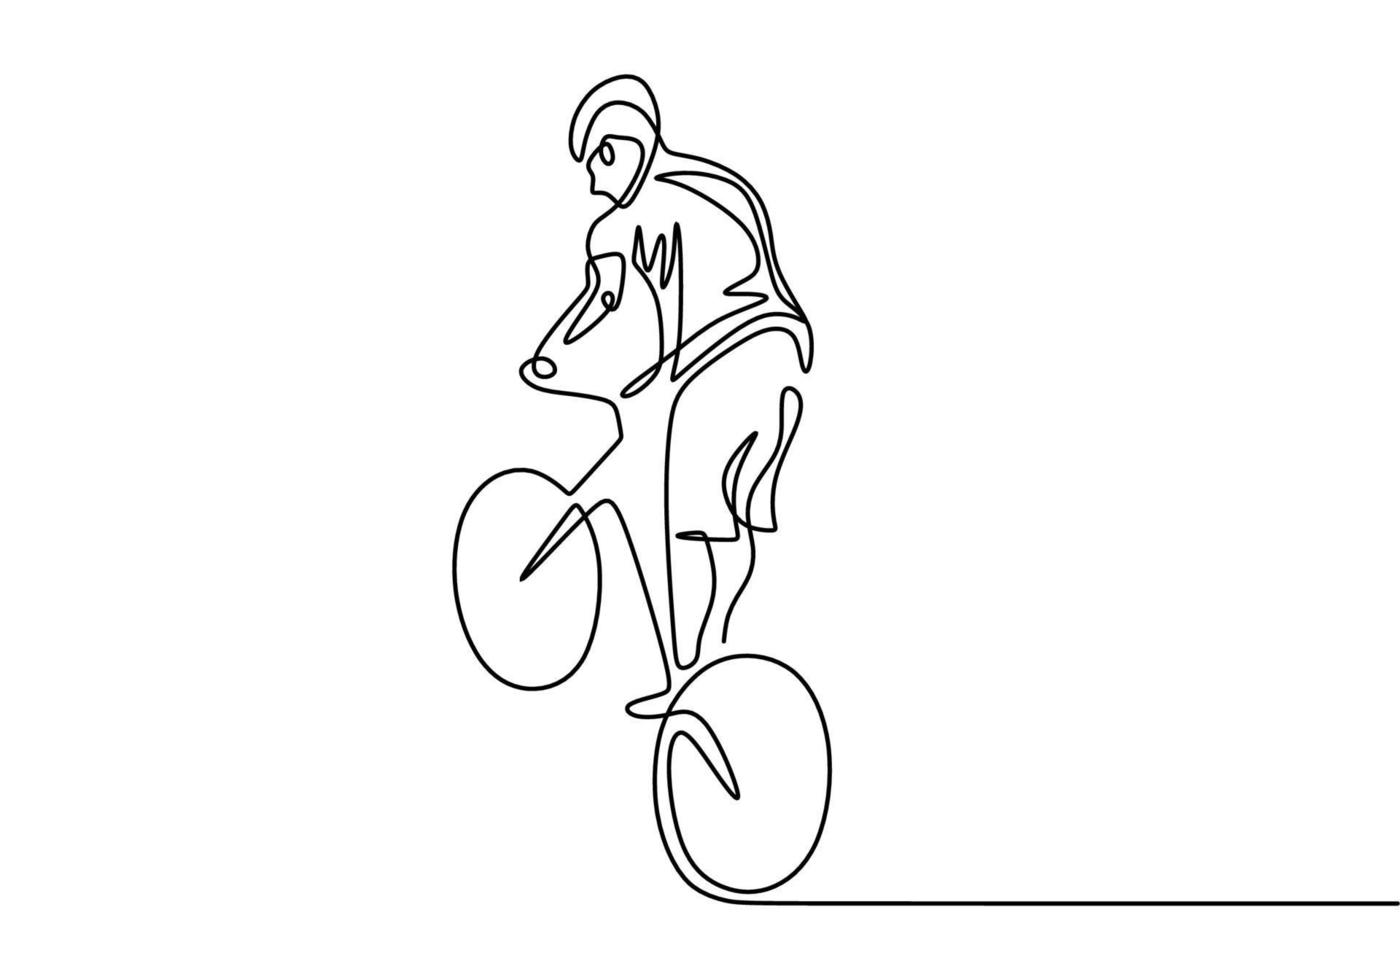 disegno di schizzo disegnato a mano di un atleta di bicicletta in linea continua. vettore